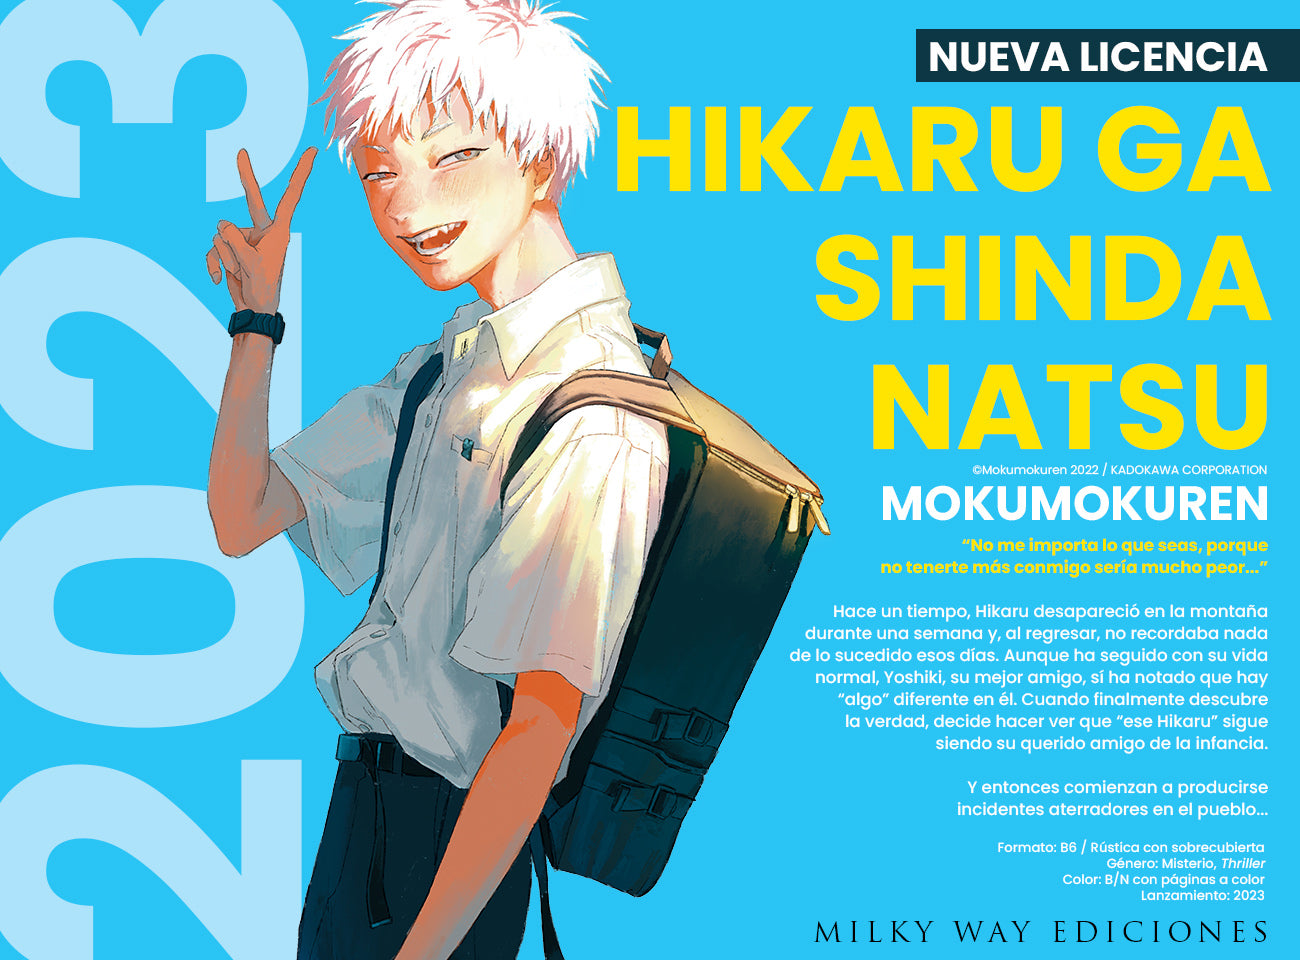 Nueva licencia: "Hikaru ga shinda natsu", de Mokumokuren